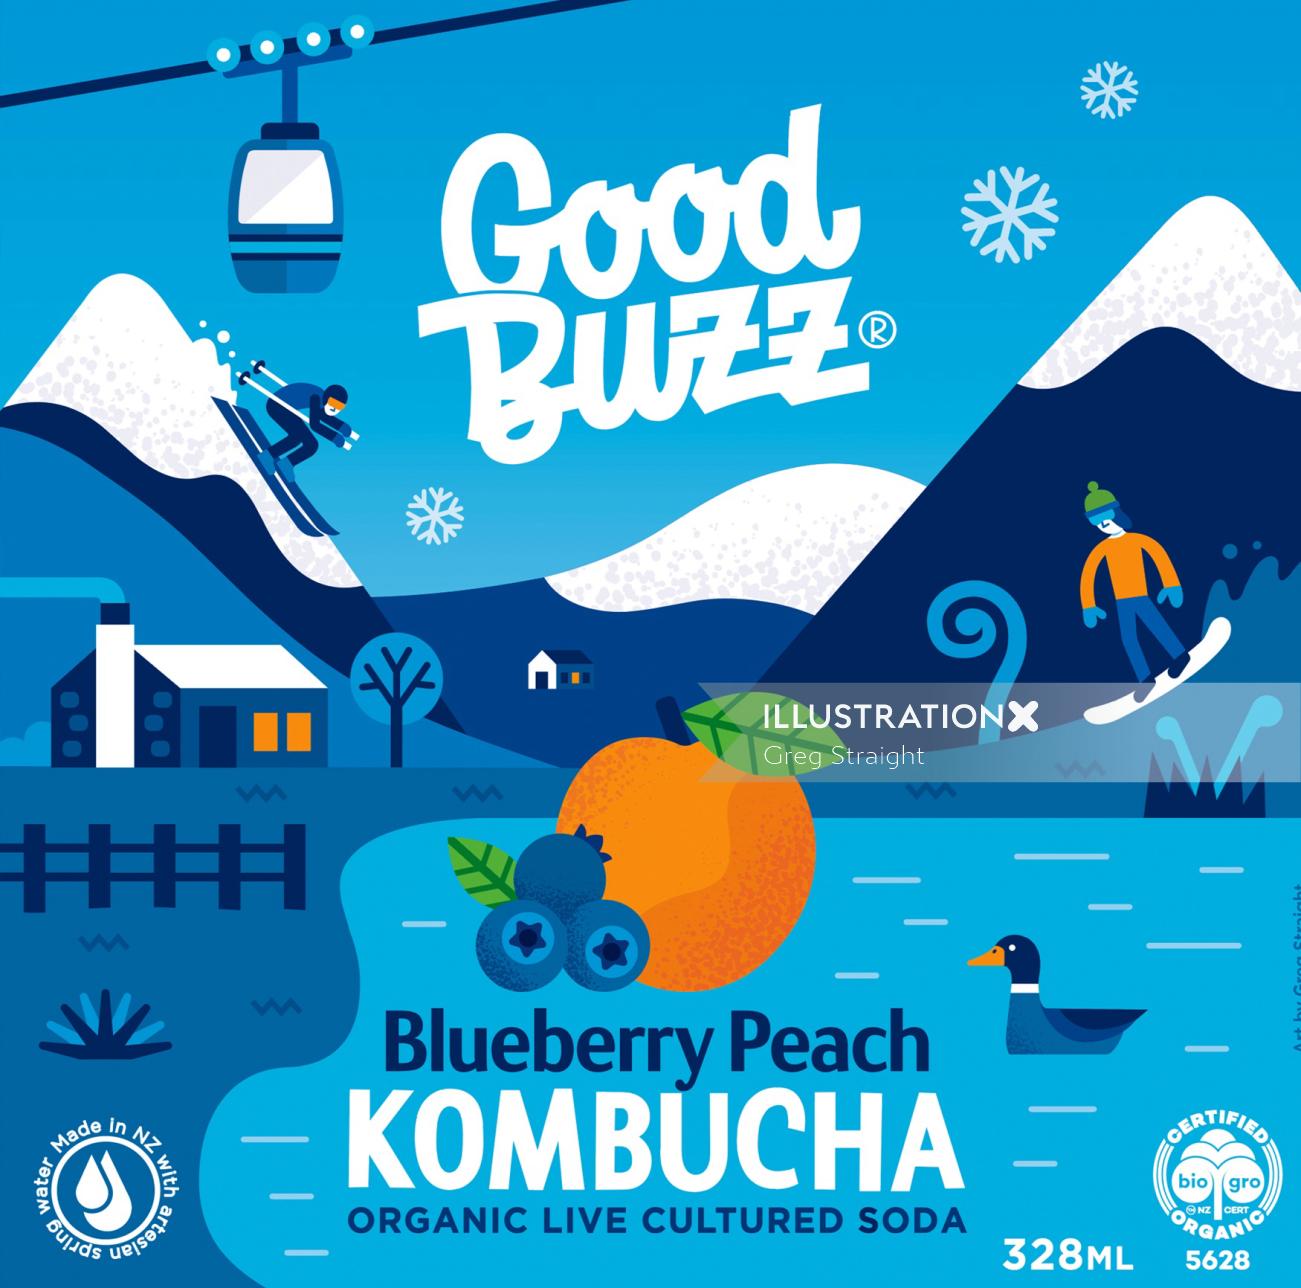 Ilustração publicitária Blueberry Peach Kombuchá